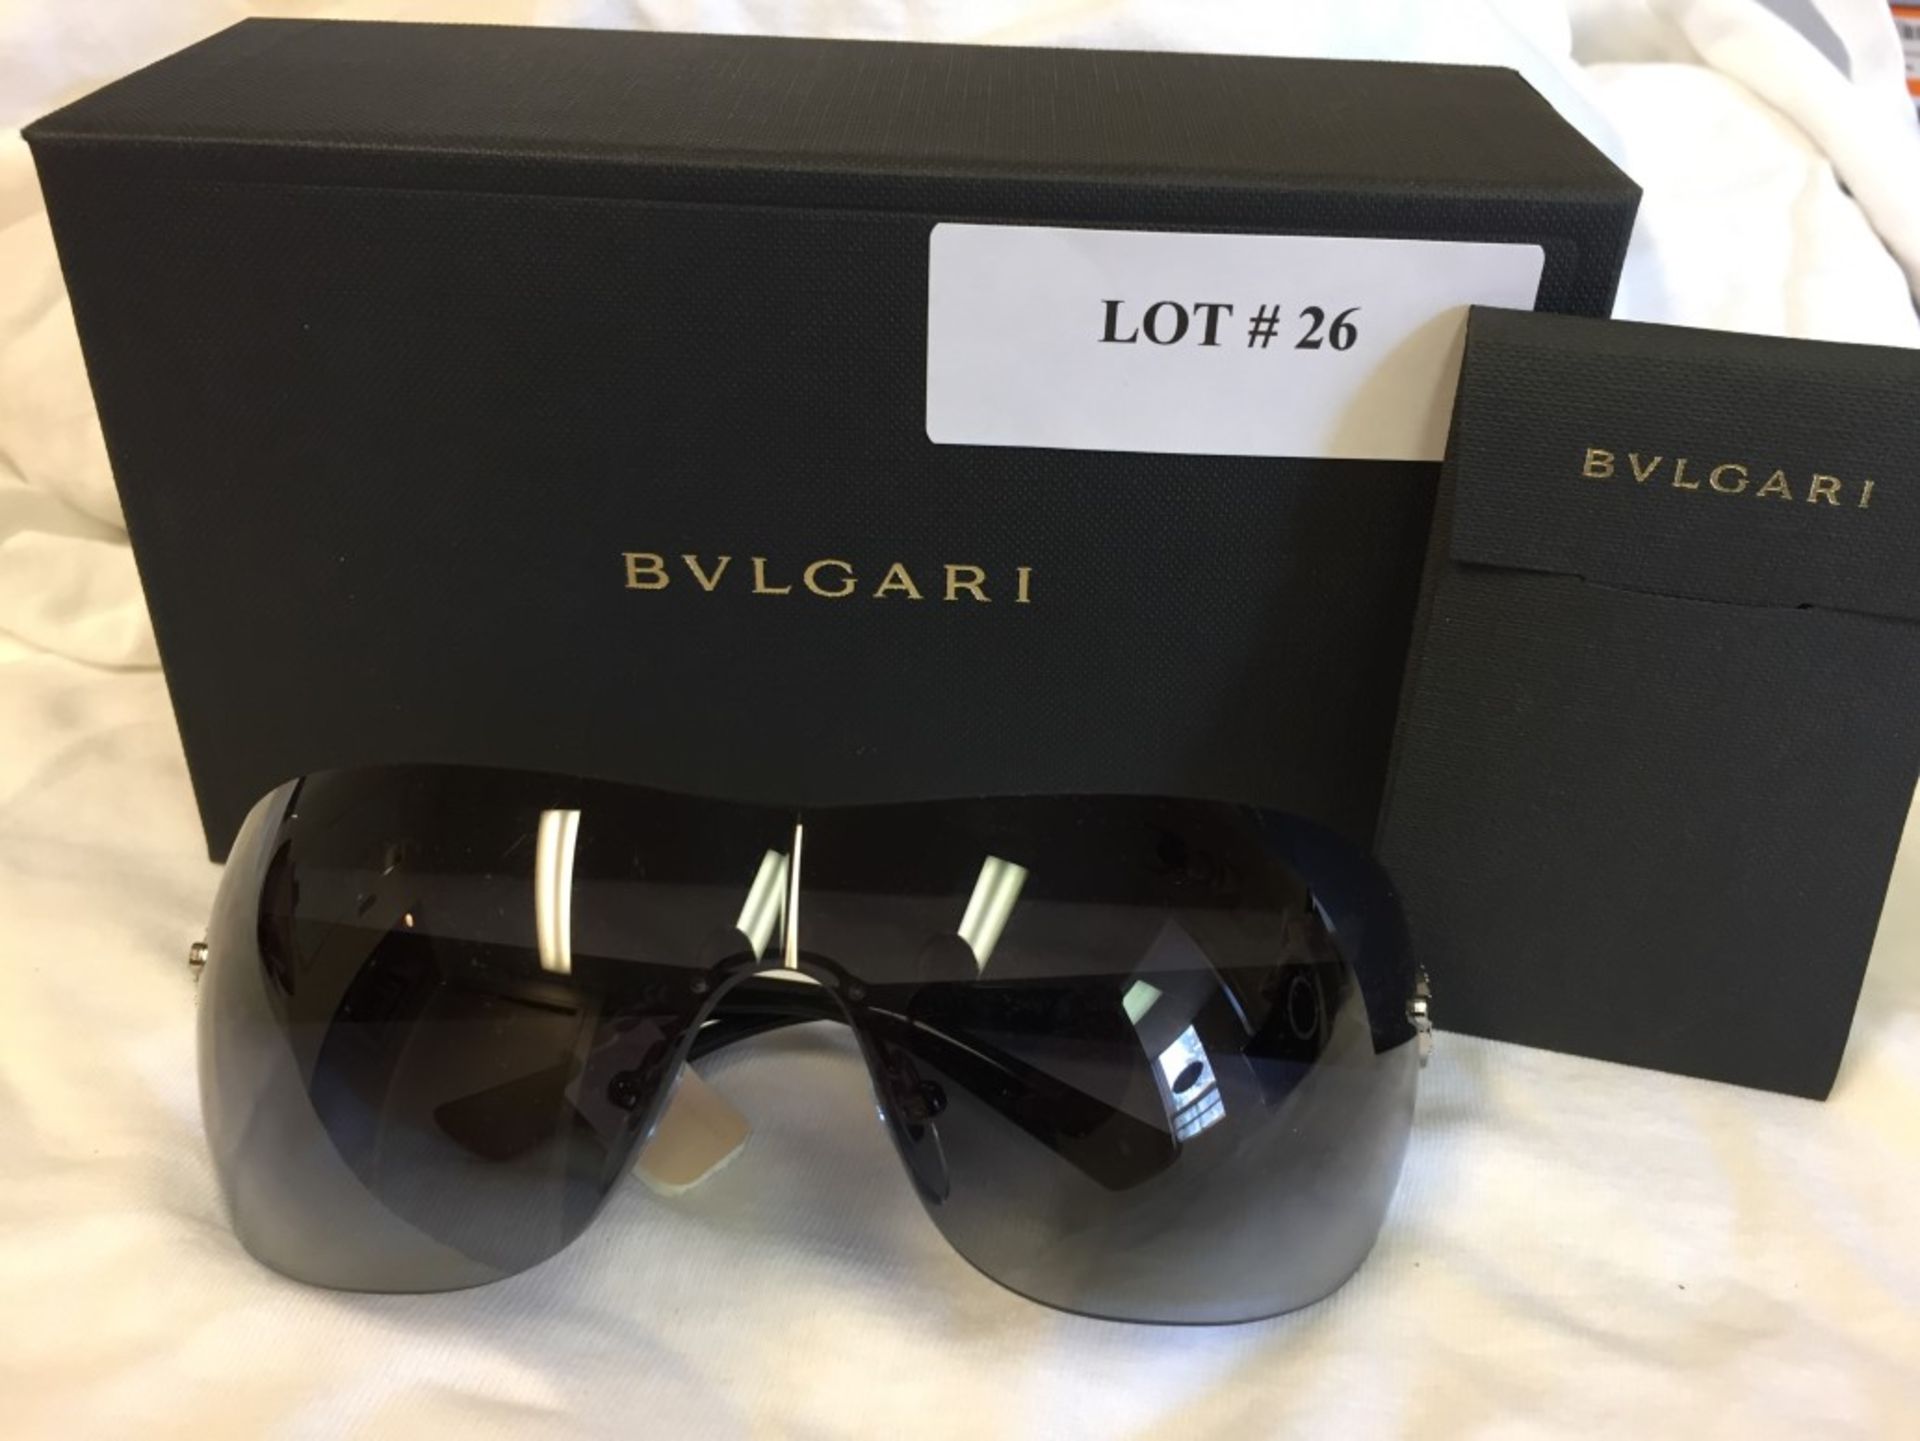 Bvlgari Sunglasses - Retail $430.00